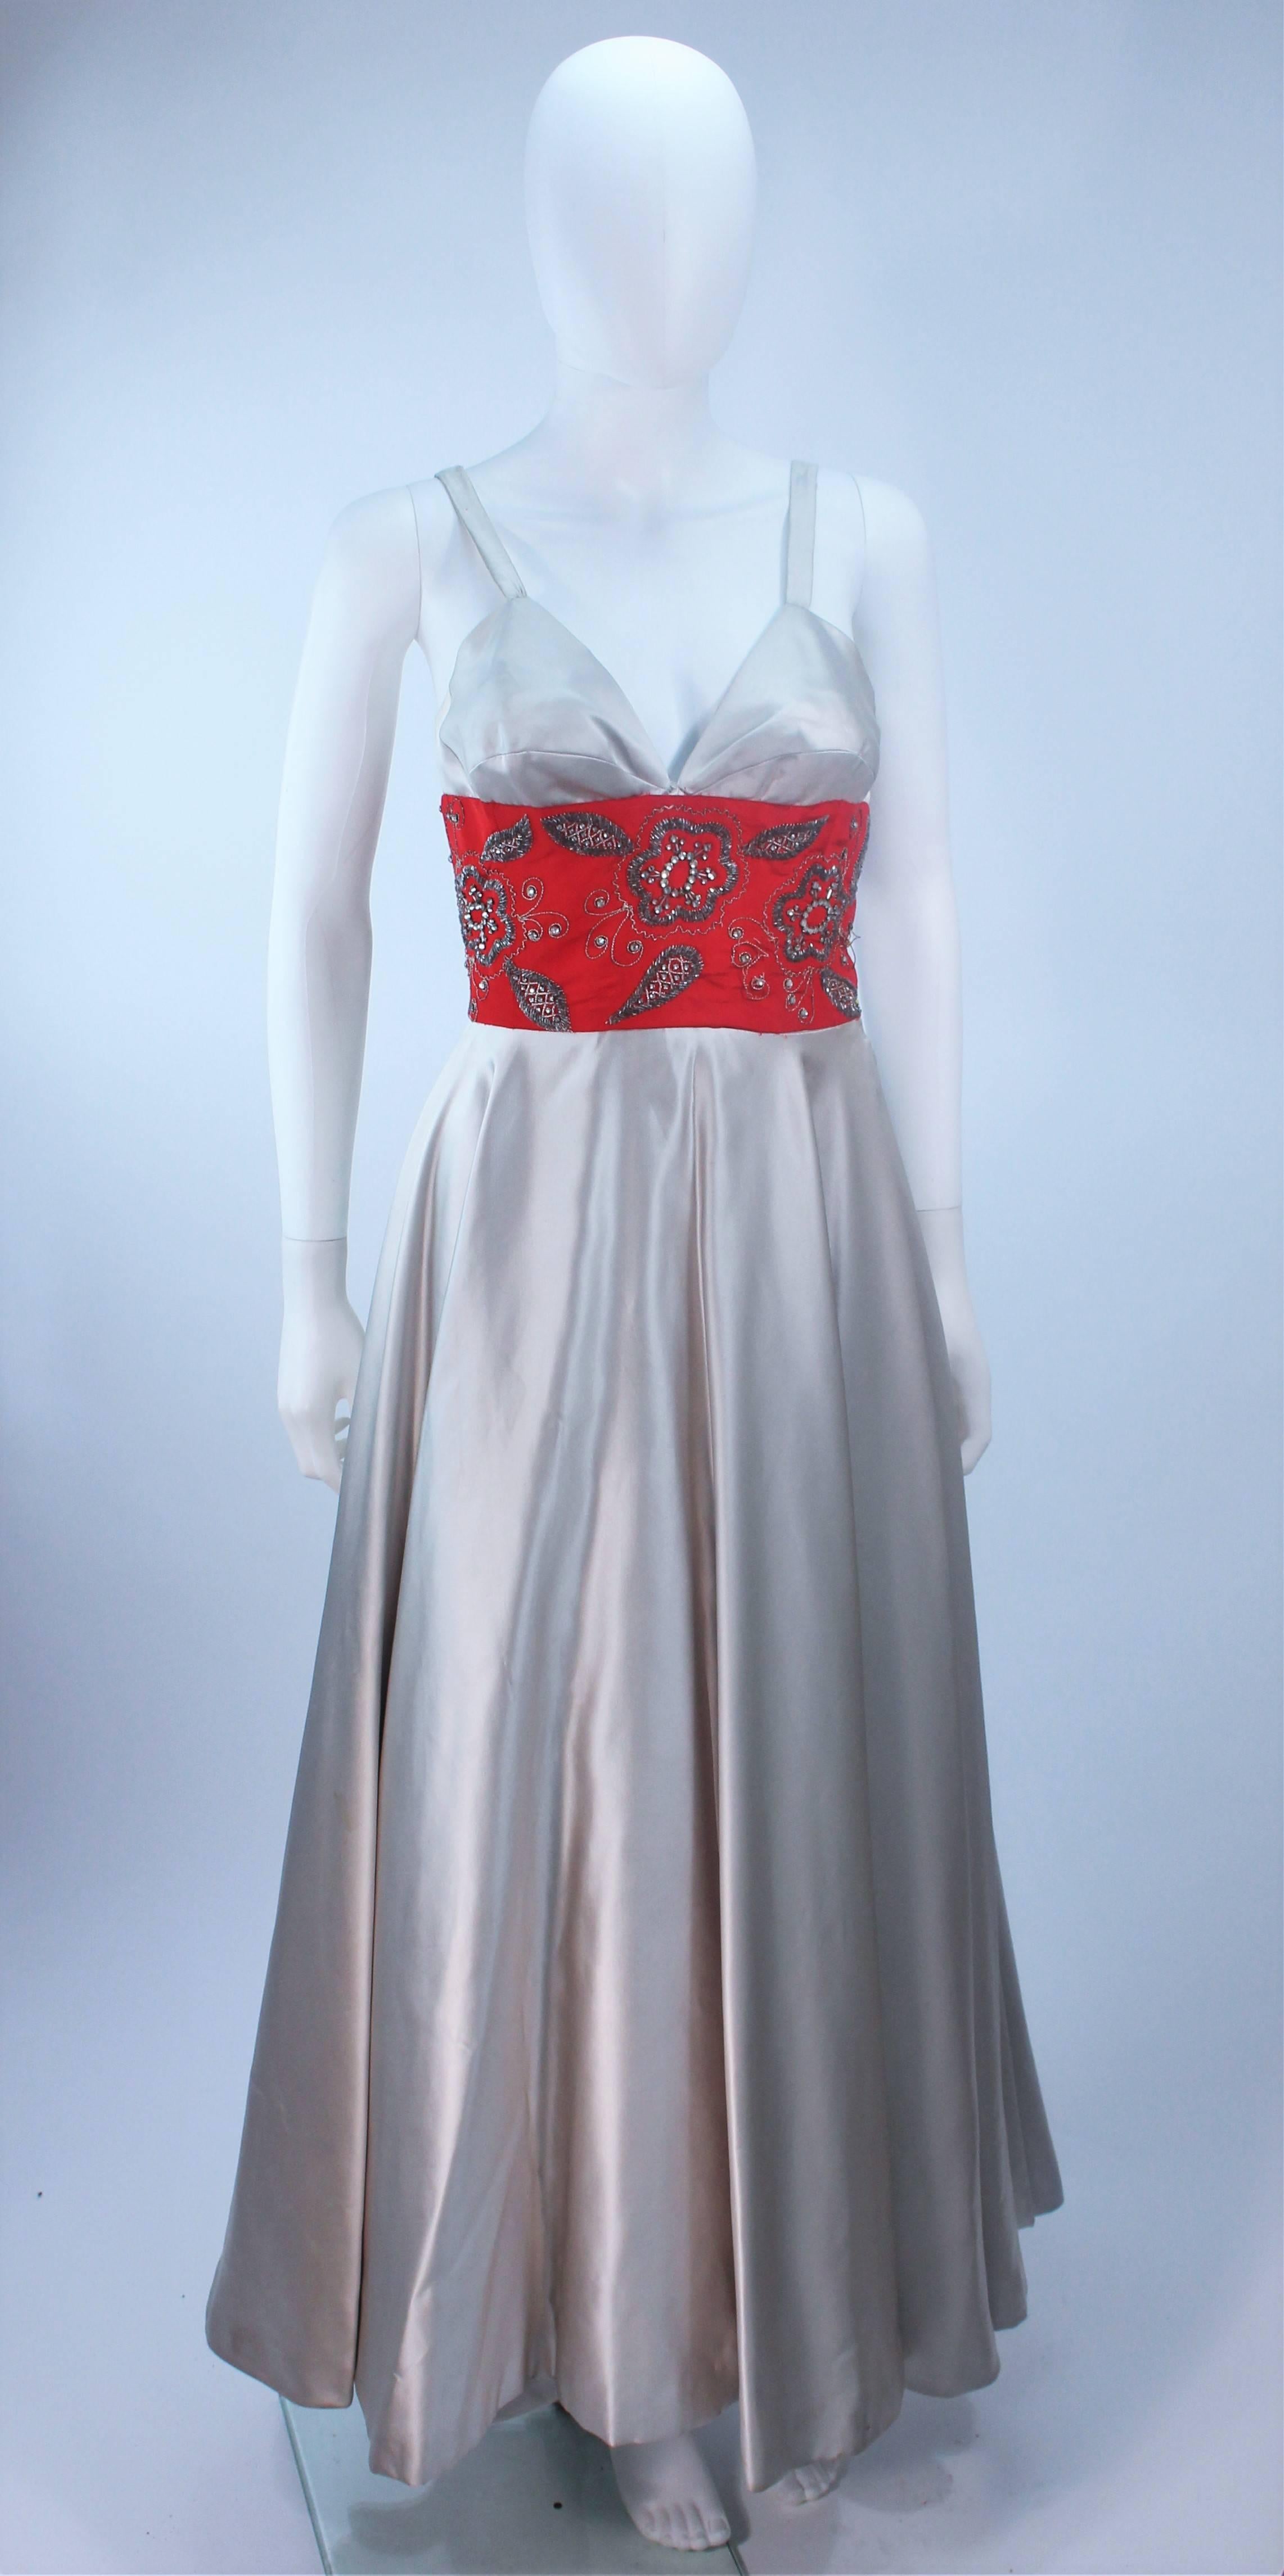 Cette Eleanora Garnett  la robe est composée d'une soie argentée avec une taille rouge embellie. Le buste est en forme de gouttière. Il y a une fermeture à glissière sur le côté. Vintage, en excellent état. (Tournée avec crinoline et tissu dans le